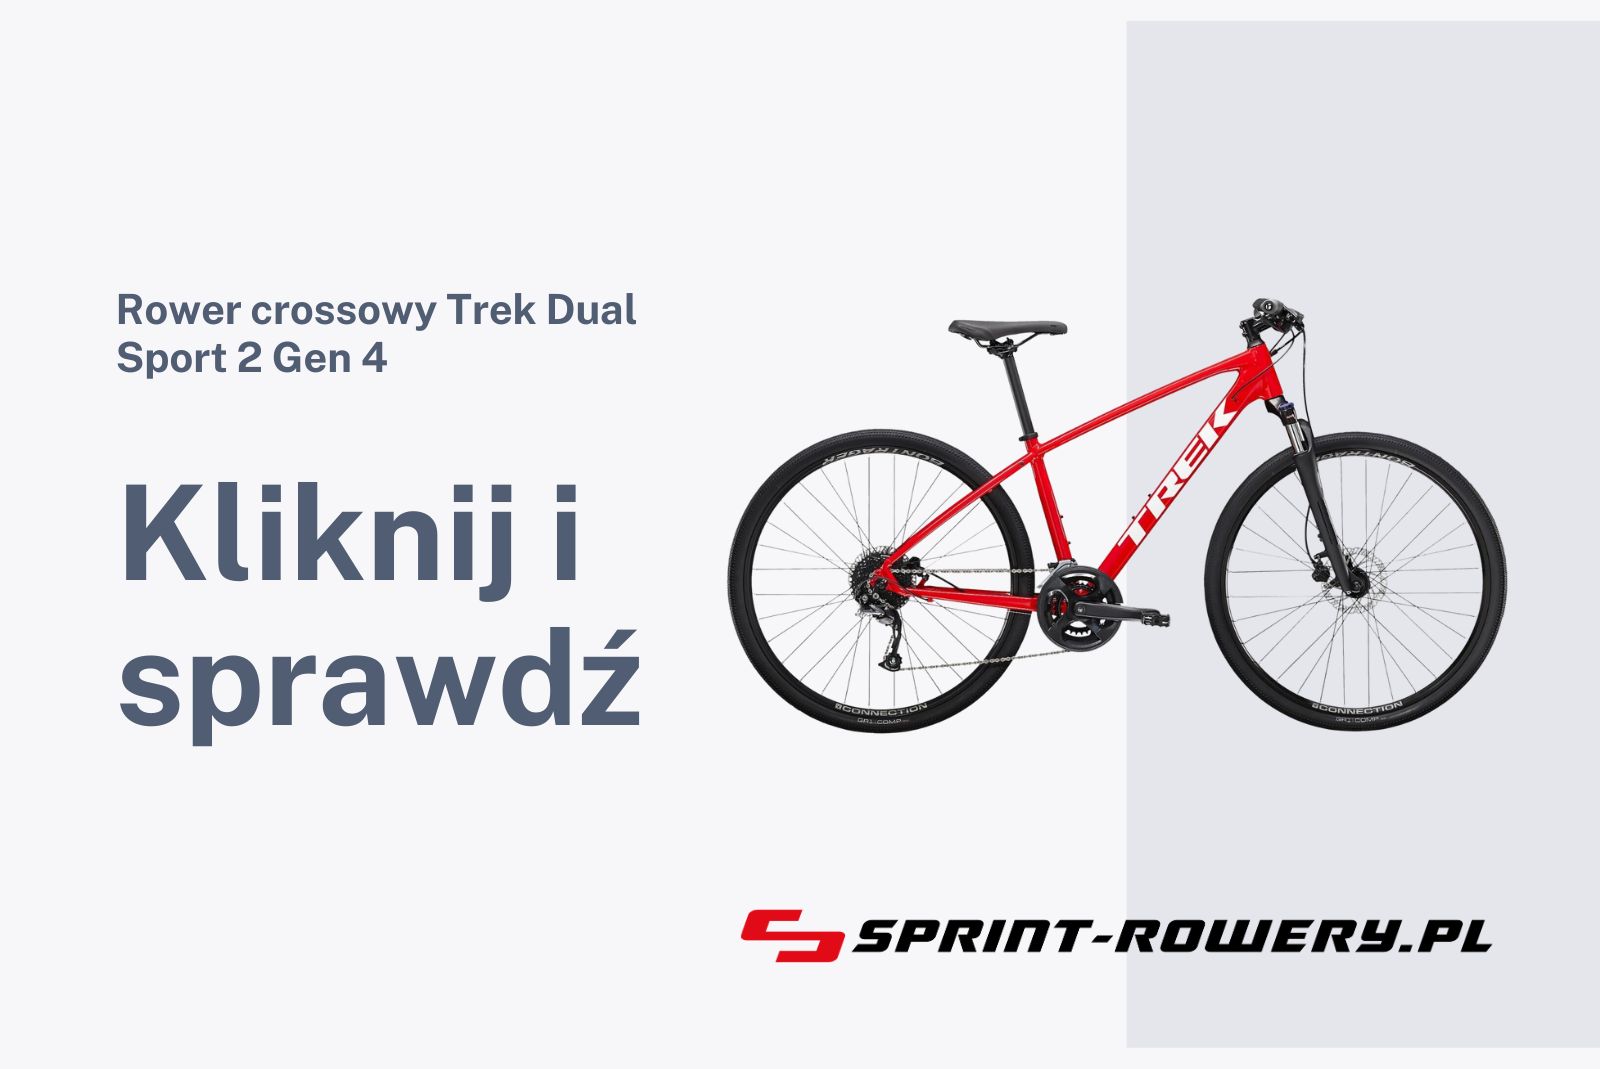 Rower crossowy Trek Dual Sport 2 Gen 4